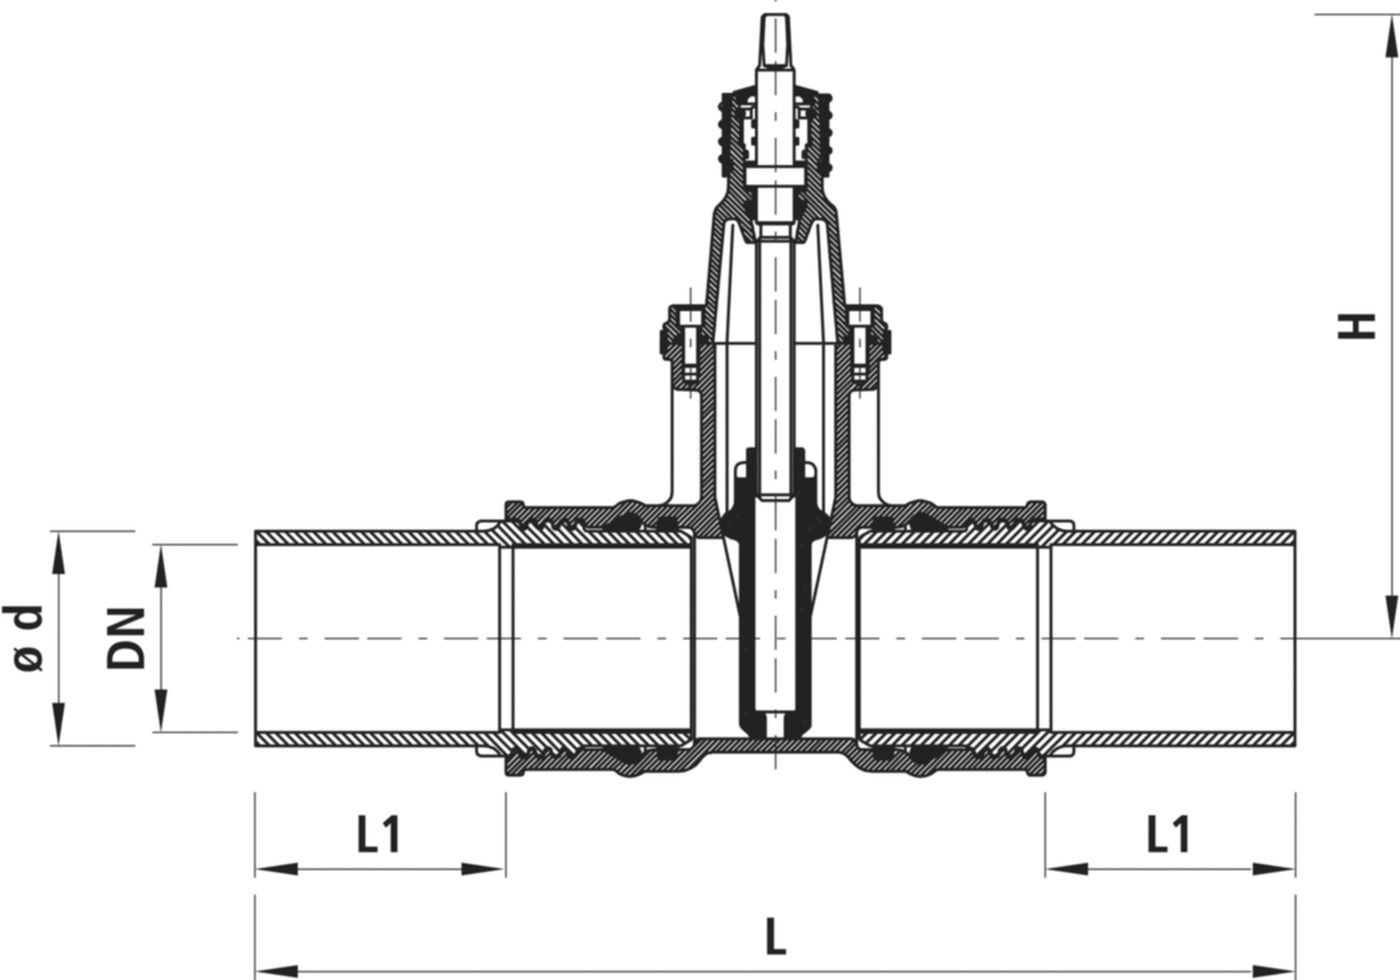 Einschweiss-Schieber für Gas S8 4816 DN 125 / d 140mm - Hawle Armaturen